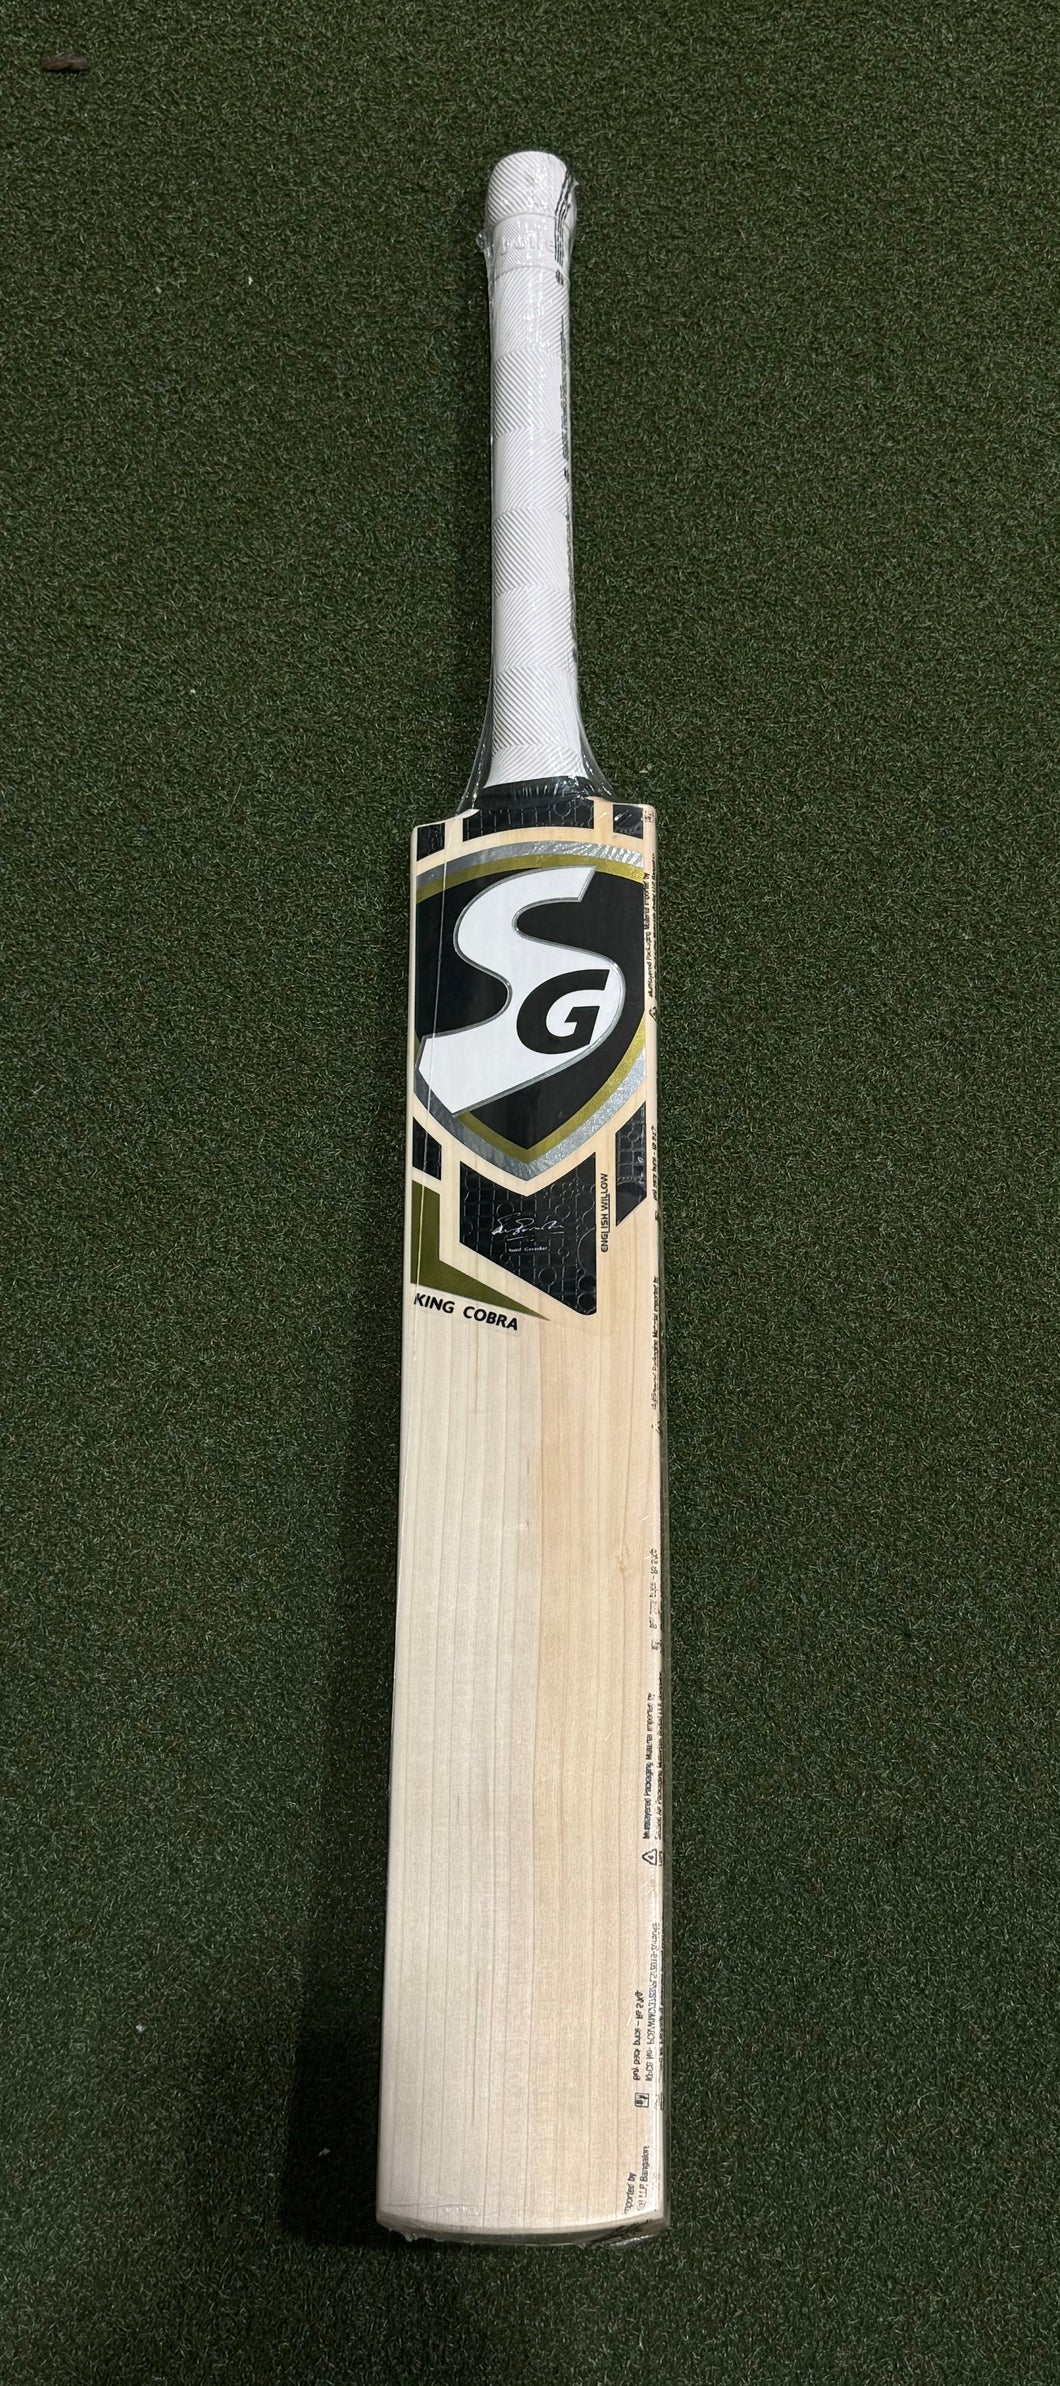 SG King Cobra English Willow bat